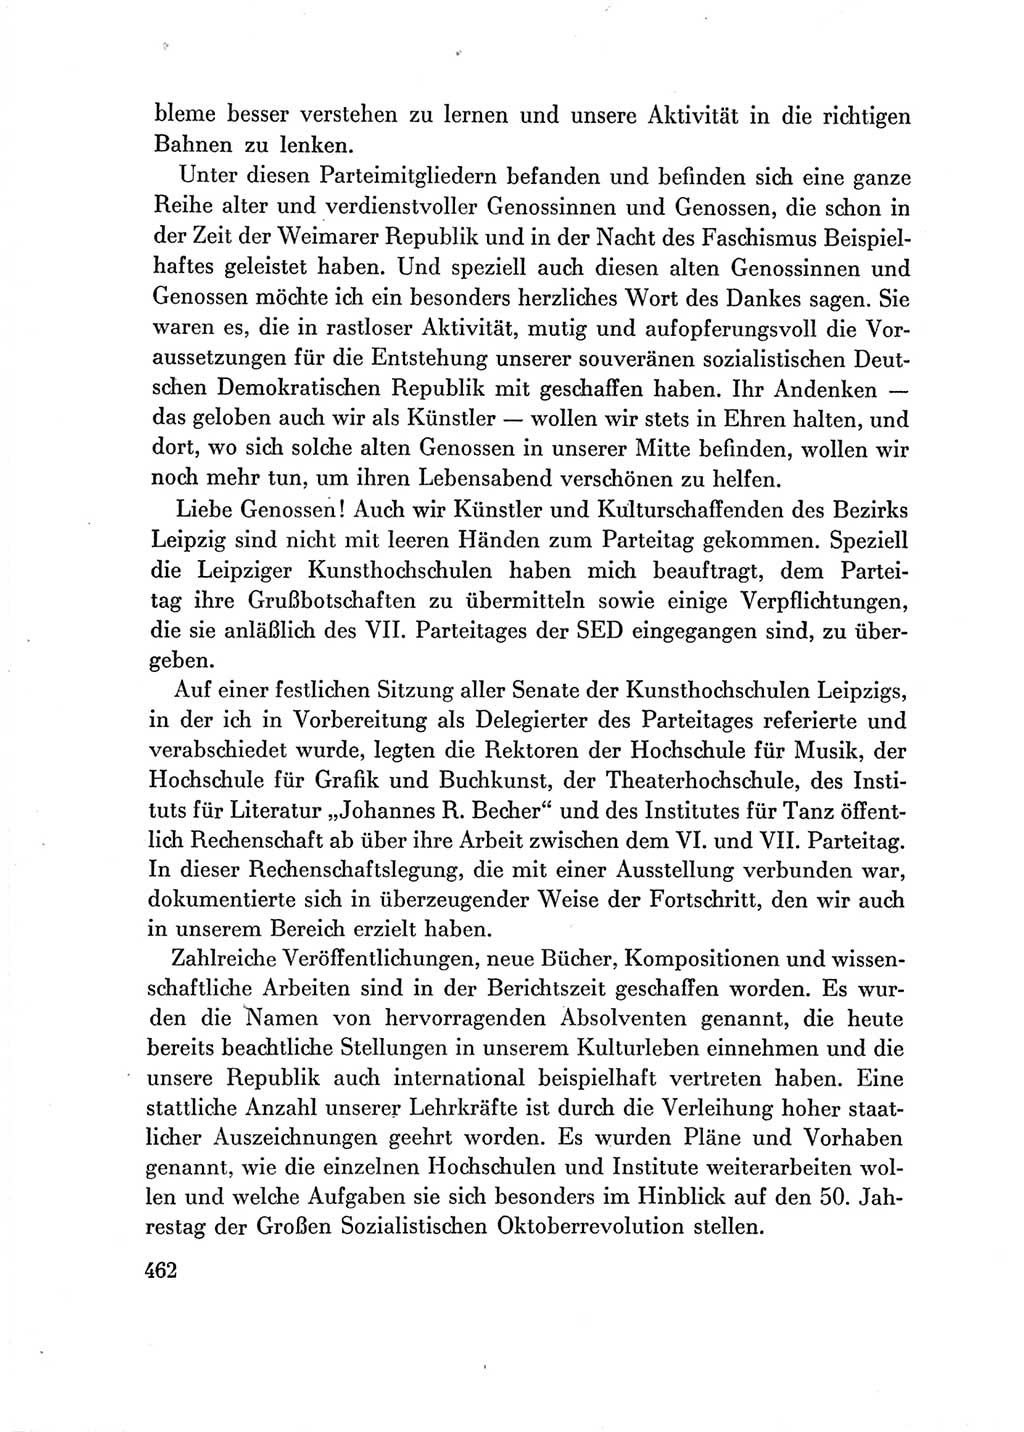 Protokoll der Verhandlungen des Ⅶ. Parteitages der Sozialistischen Einheitspartei Deutschlands (SED) [Deutsche Demokratische Republik (DDR)] 1967, Band Ⅲ, Seite 462 (Prot. Verh. Ⅶ. PT SED DDR 1967, Bd. Ⅲ, S. 462)